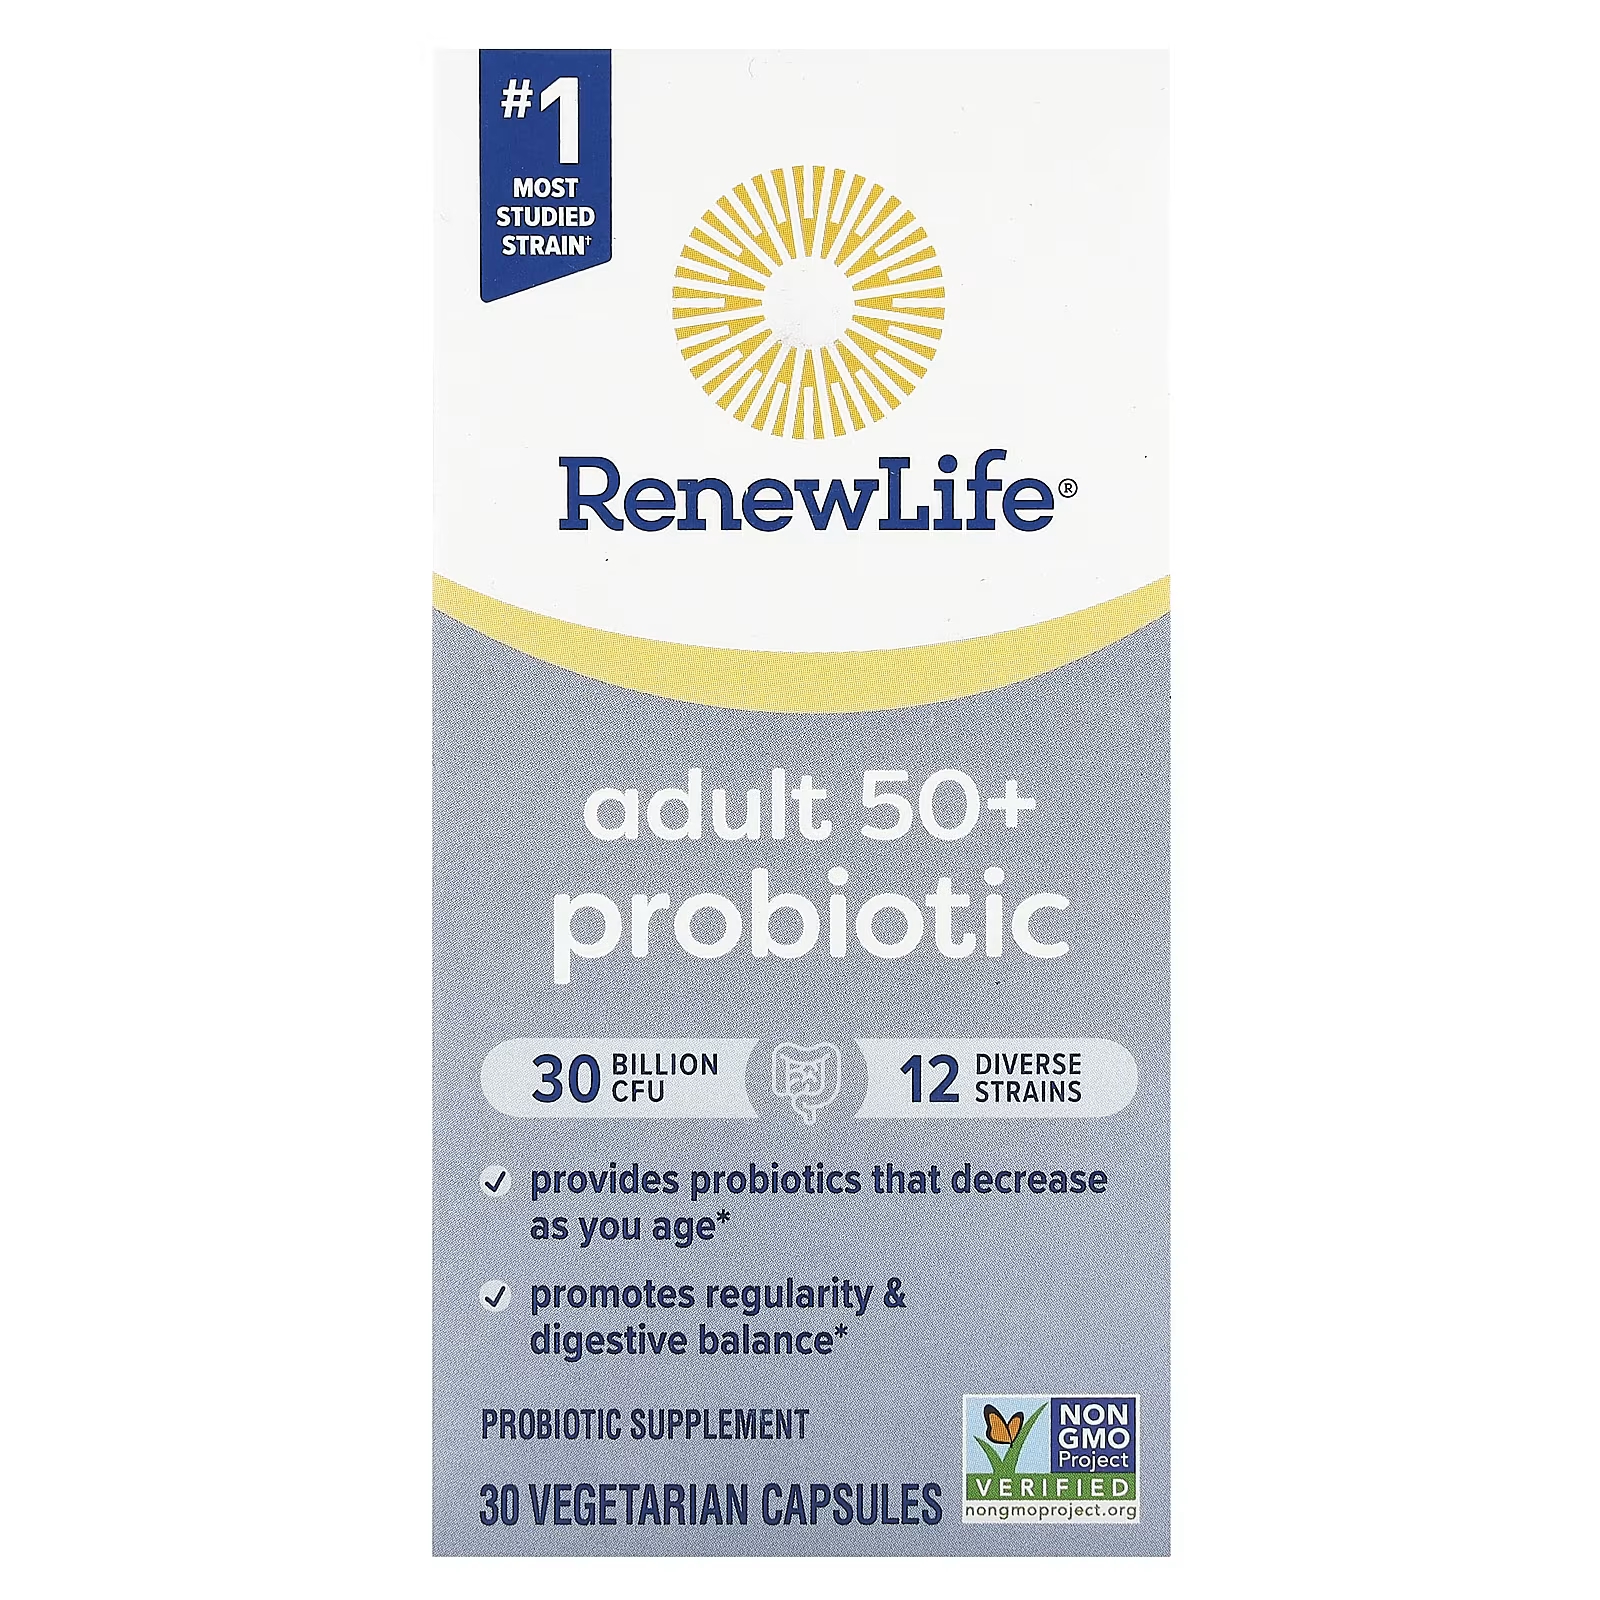 Пробиотик Renew Life для взрослых старше 50 лет, 30 миллиардов КОЕ, 30 вегетарианских капсул